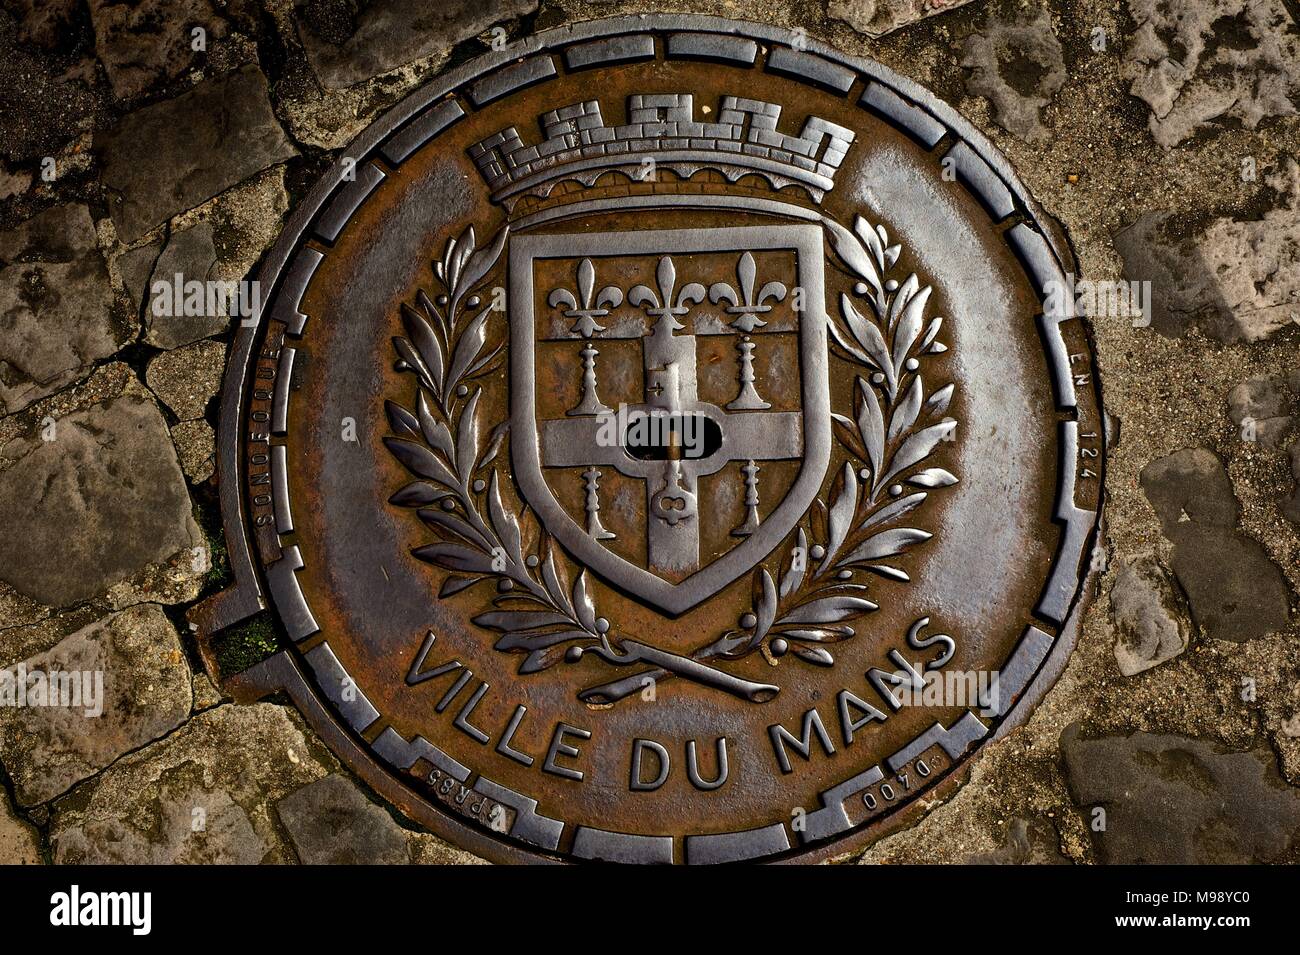 Ornato chiusino per le strade della città storica di Le Mans, Francia mostra lo stemma della zona e la scritta Ville du Mans Foto Stock